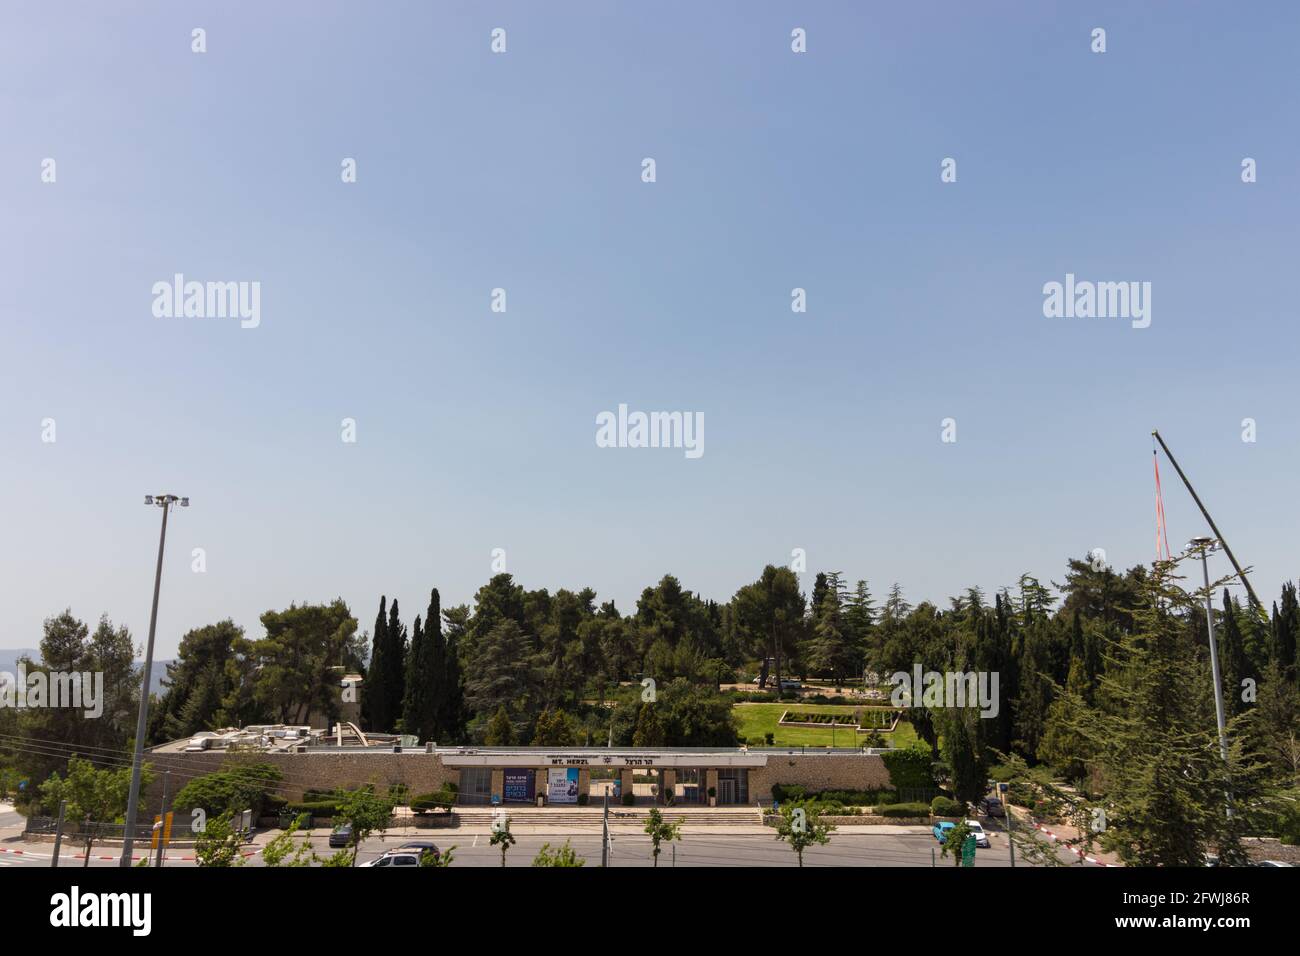 22-04-2020. jérusalem-israël. Le parc national près du cimetière militaire, sur le mont Herzl à Jérusalem. Banque D'Images